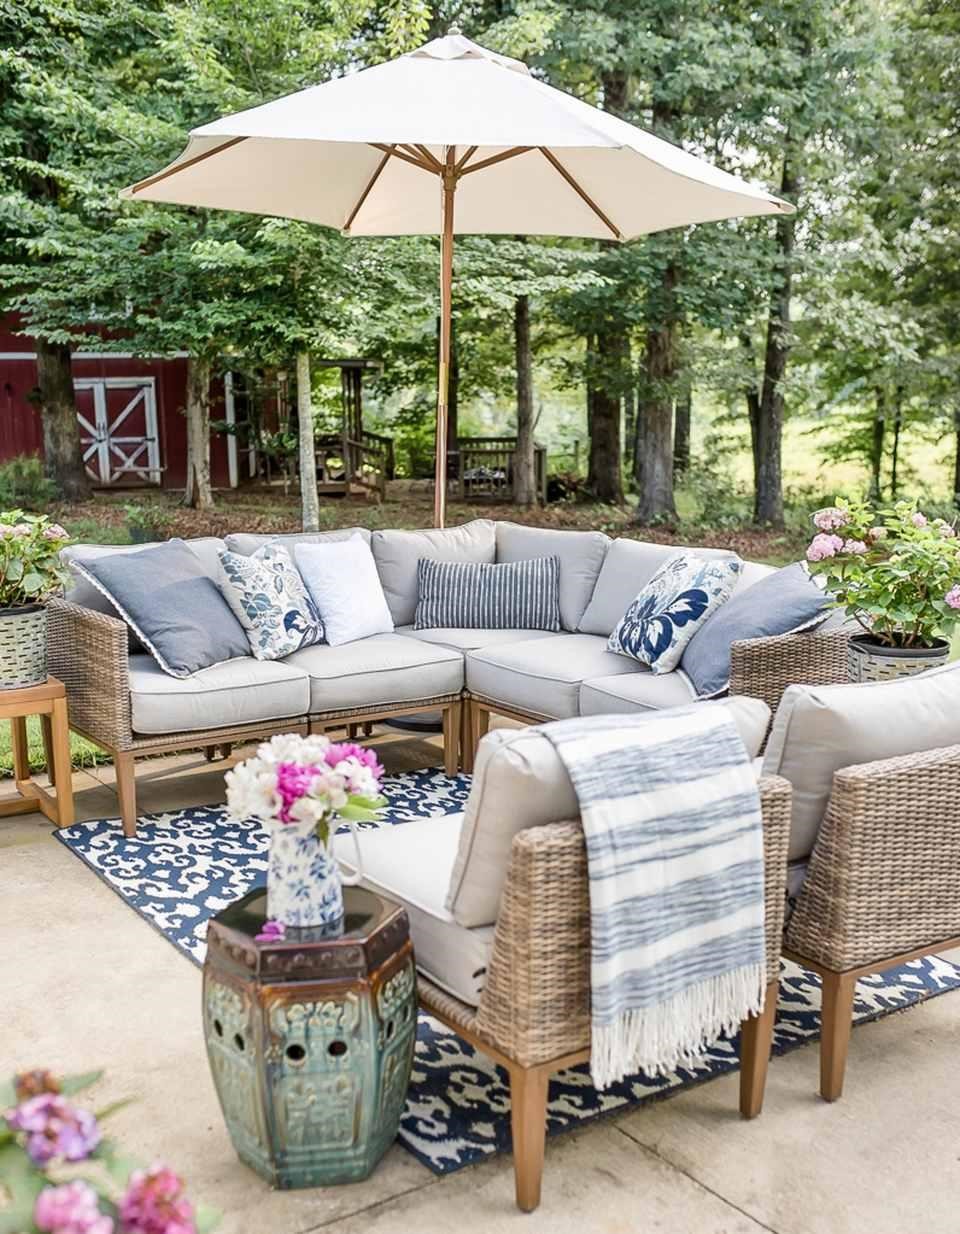 5. SIMPHOME.COM Make your outdoor living room